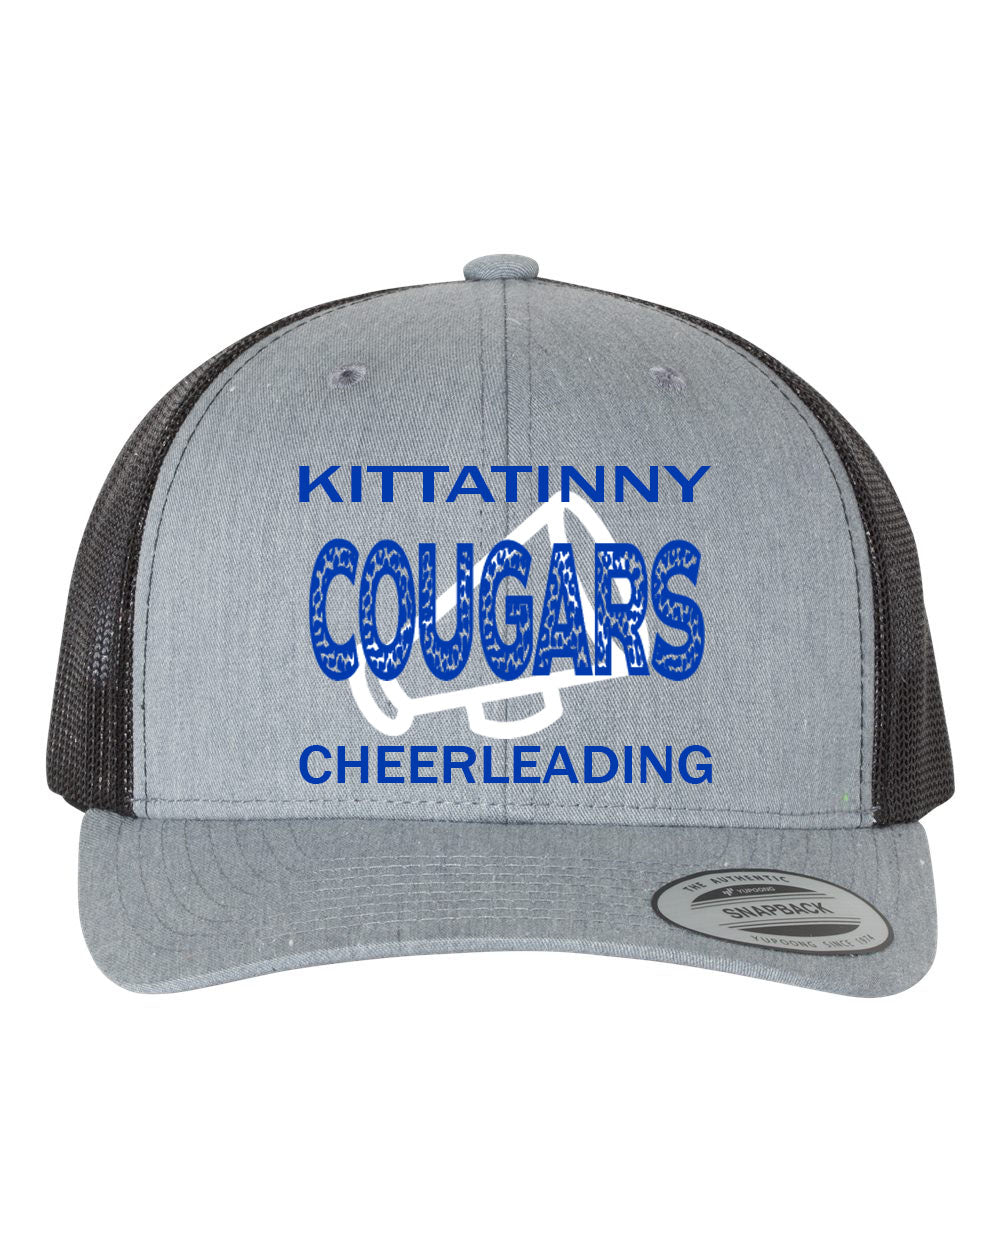 Kittatinny Cheer Design 10 Trucker Hat